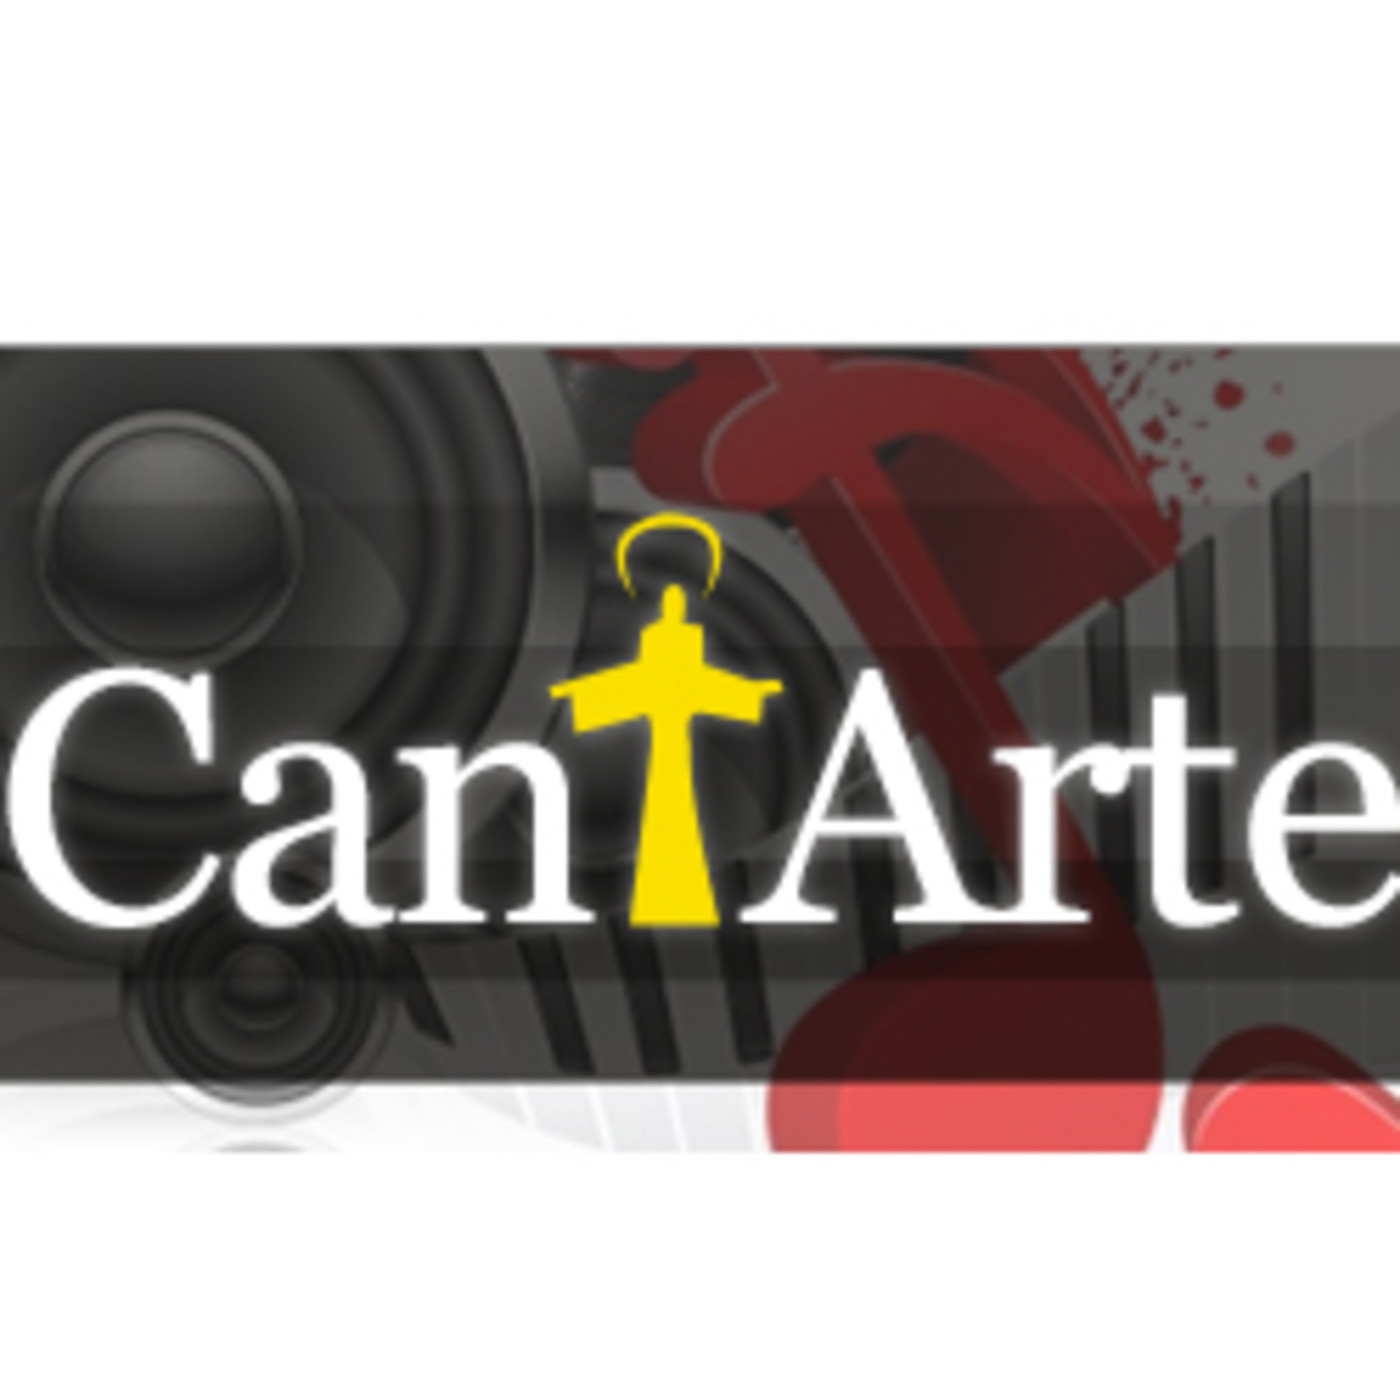 CantArte